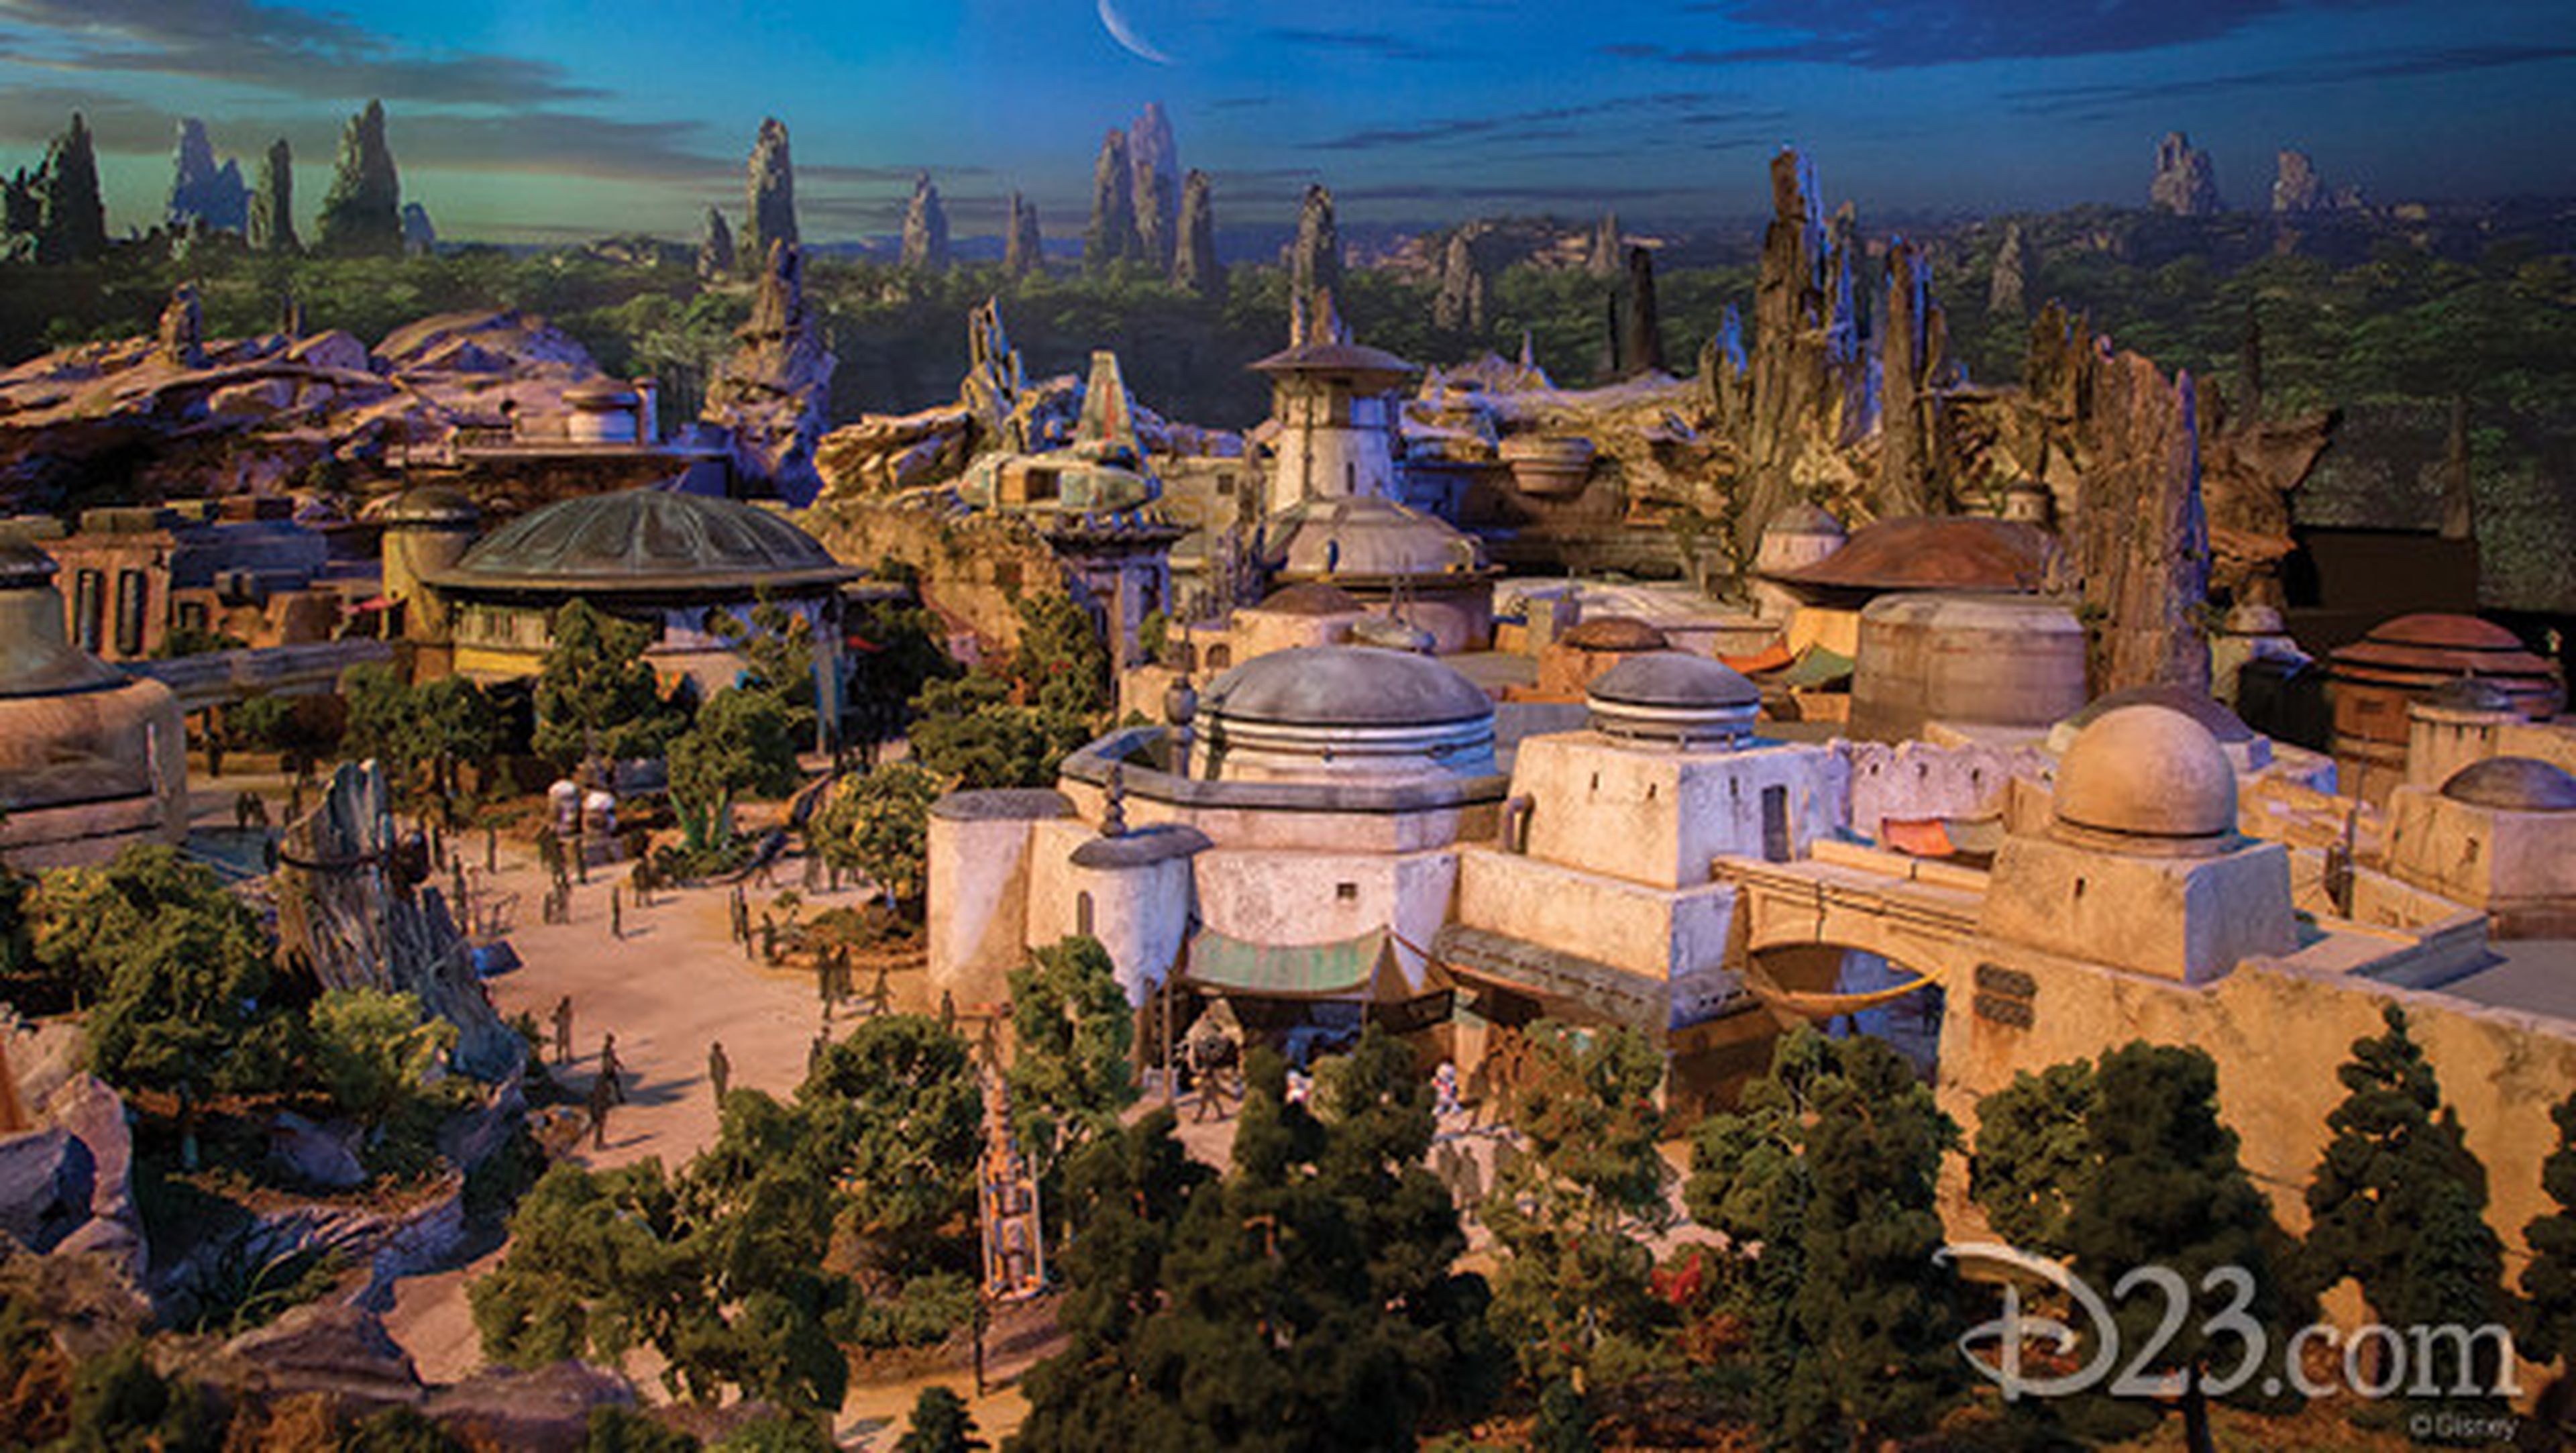 Primeras imágenes en 3D de Star Wars Land.